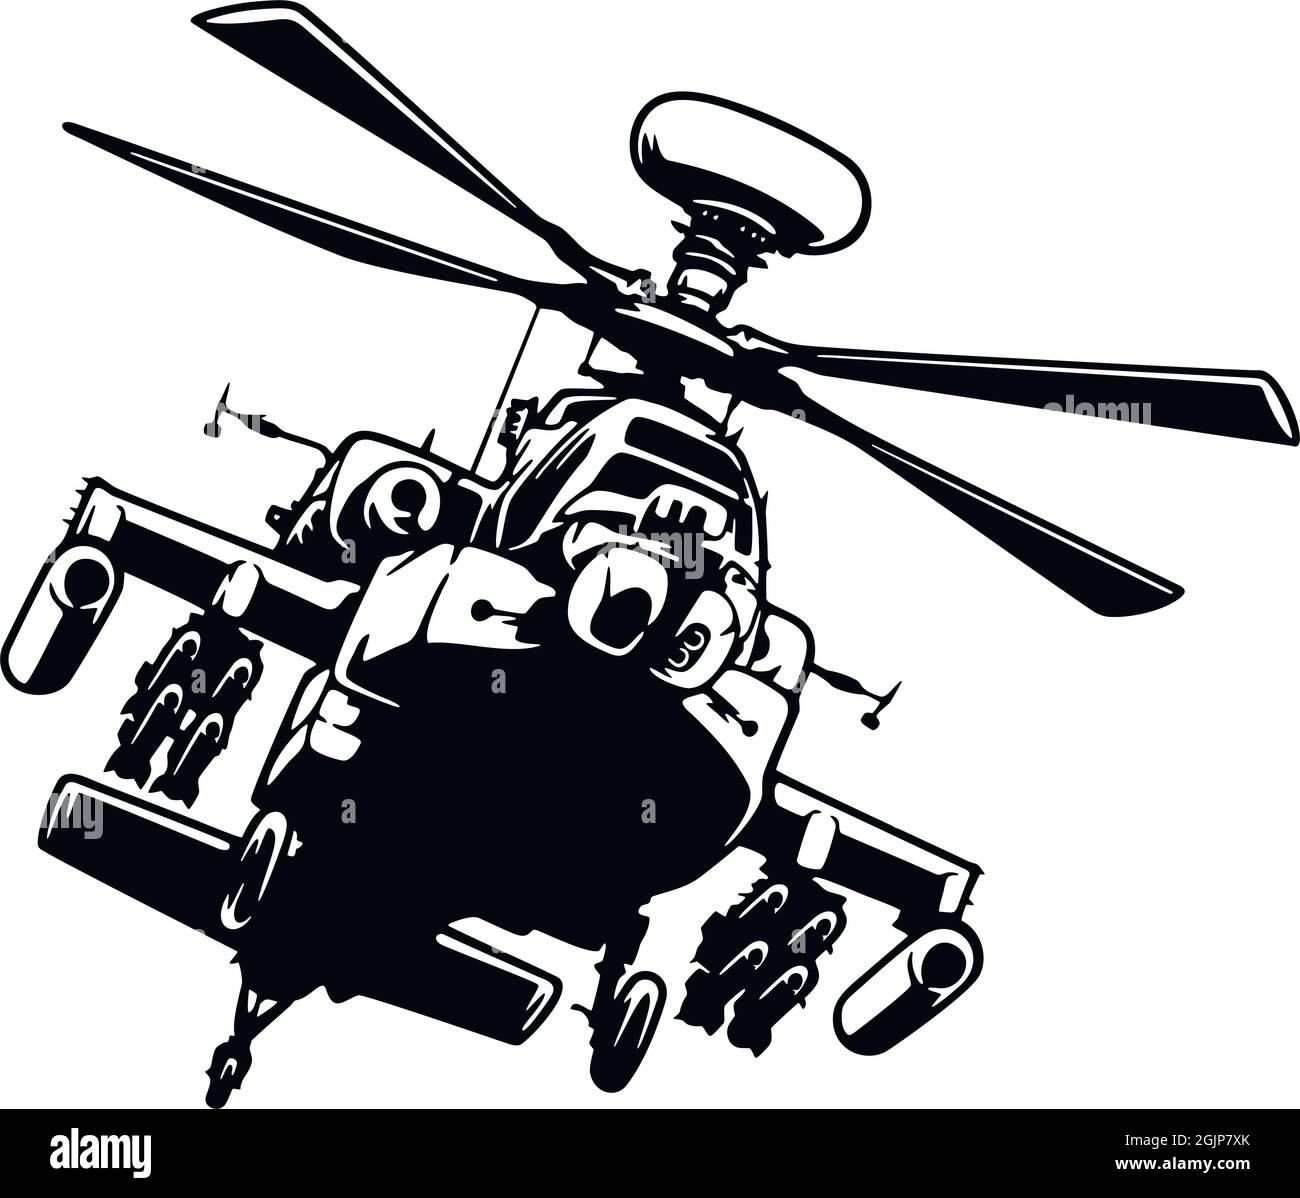 Military Helicopter detaillierte Silhouette. Schablone auf weißem Hintergrund isoliert Stock Vektor